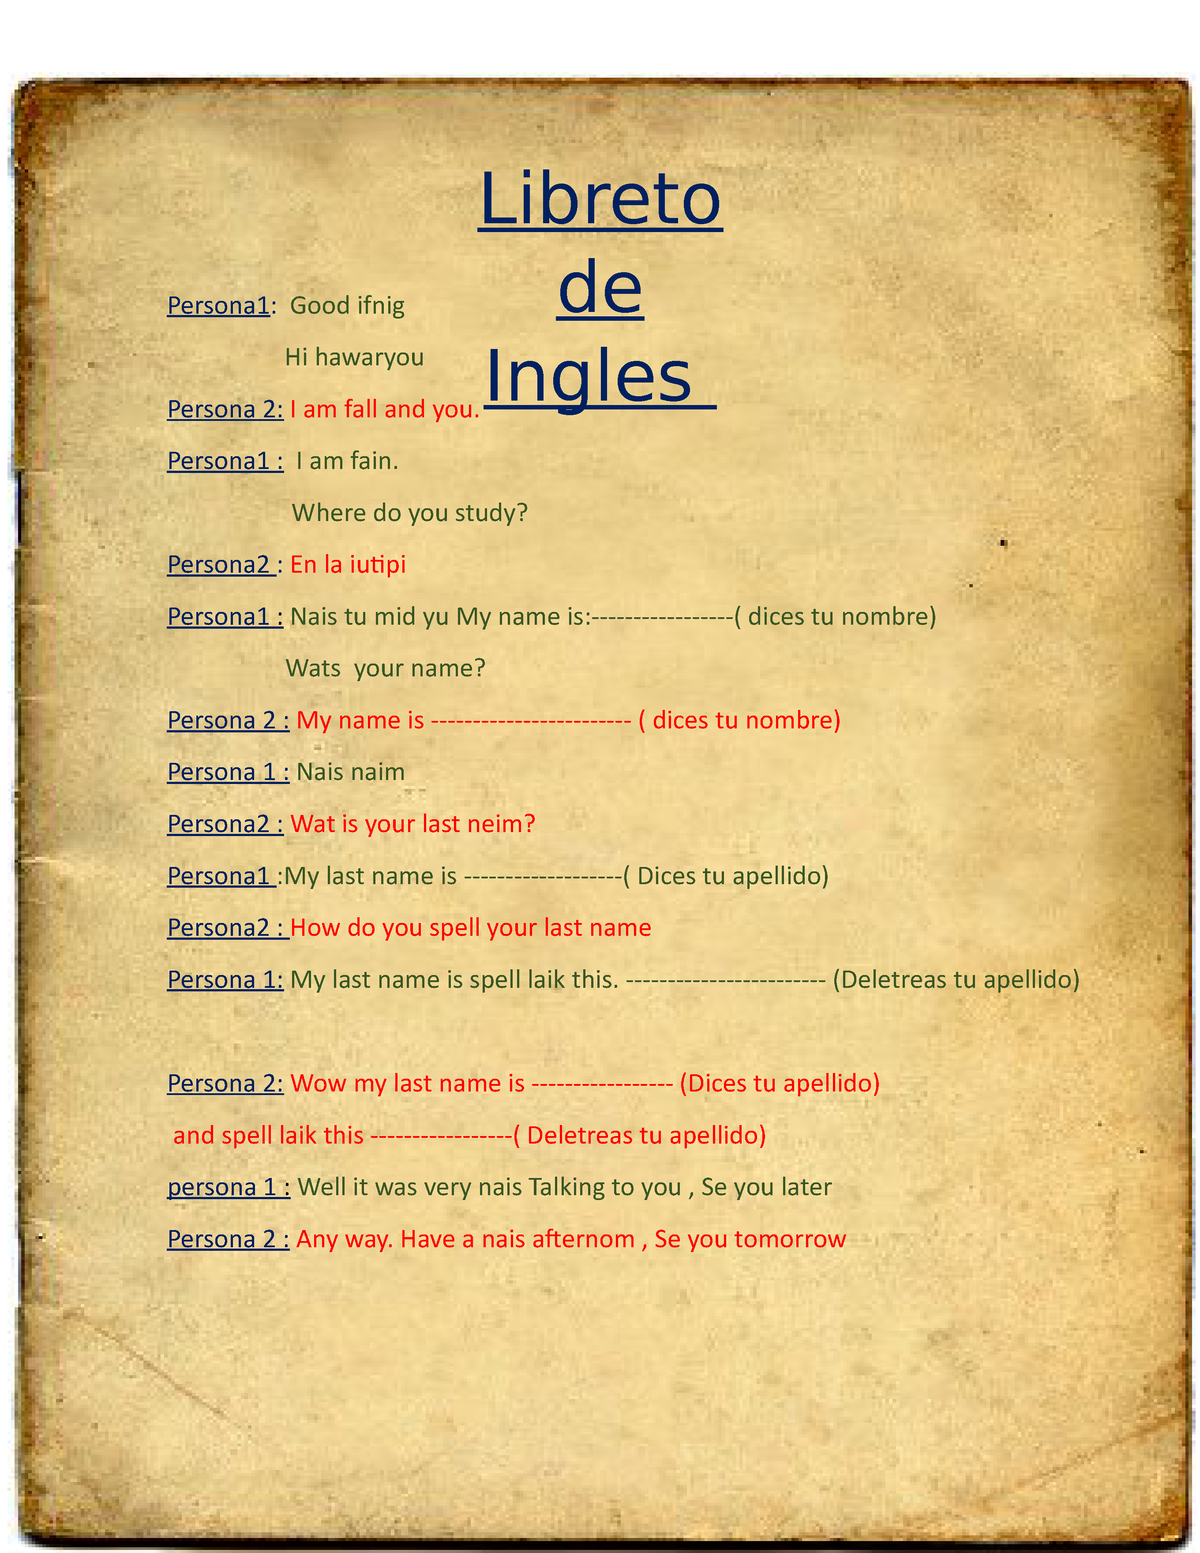 Libreto DE Ingles - LIBRETO DE INGLES 11111111 INTERVIEW: TO: Good